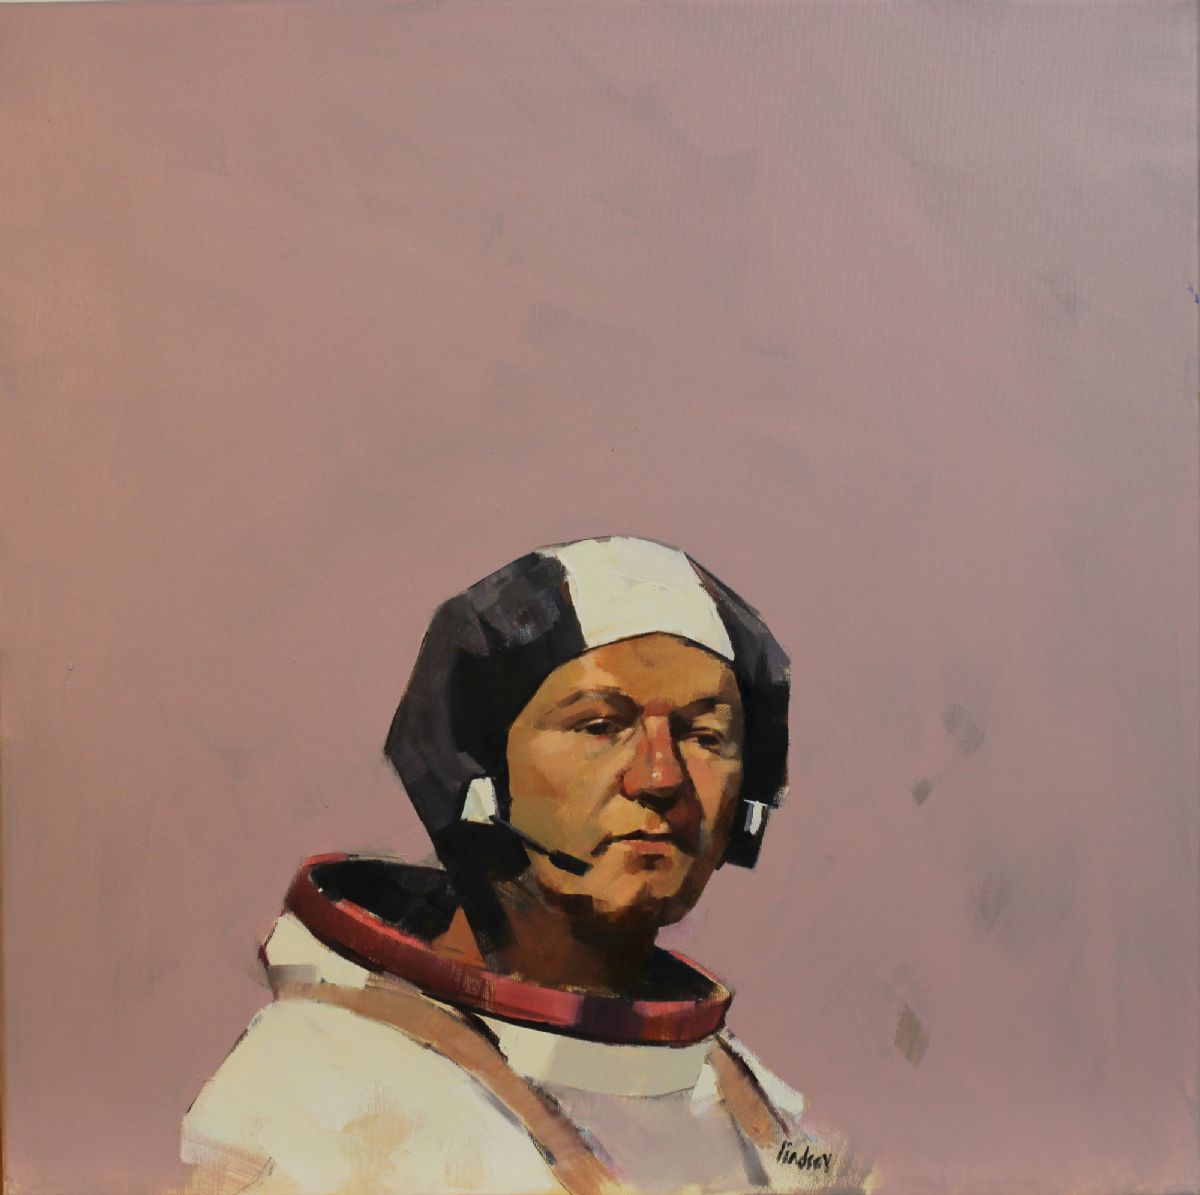 Self portrait as space cadet